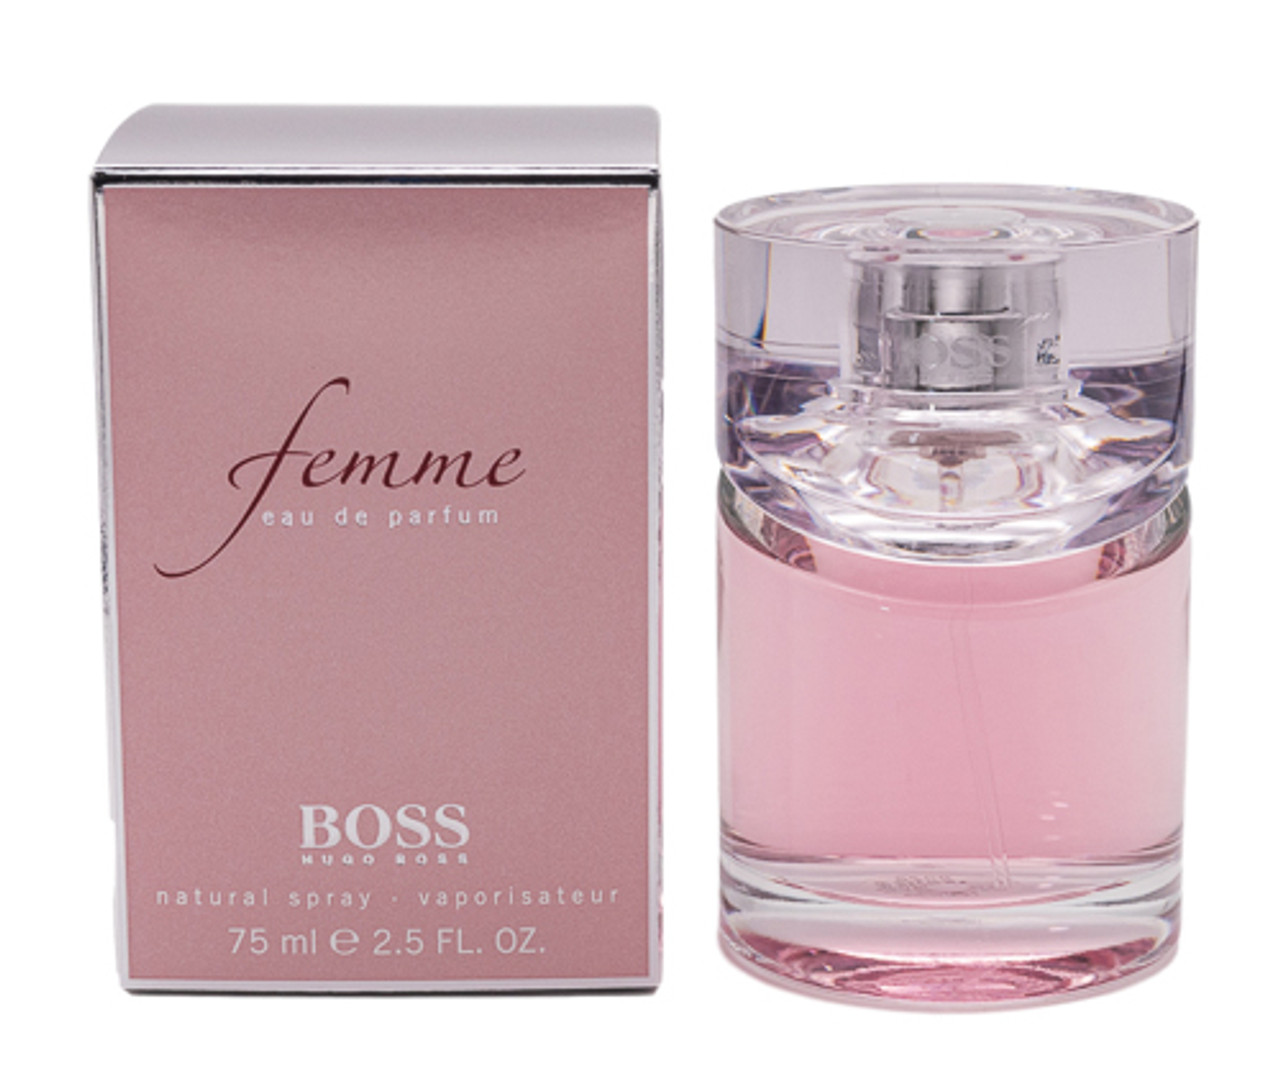 Boss Femme by Hugo Boss 2.5 oz EDP for women -